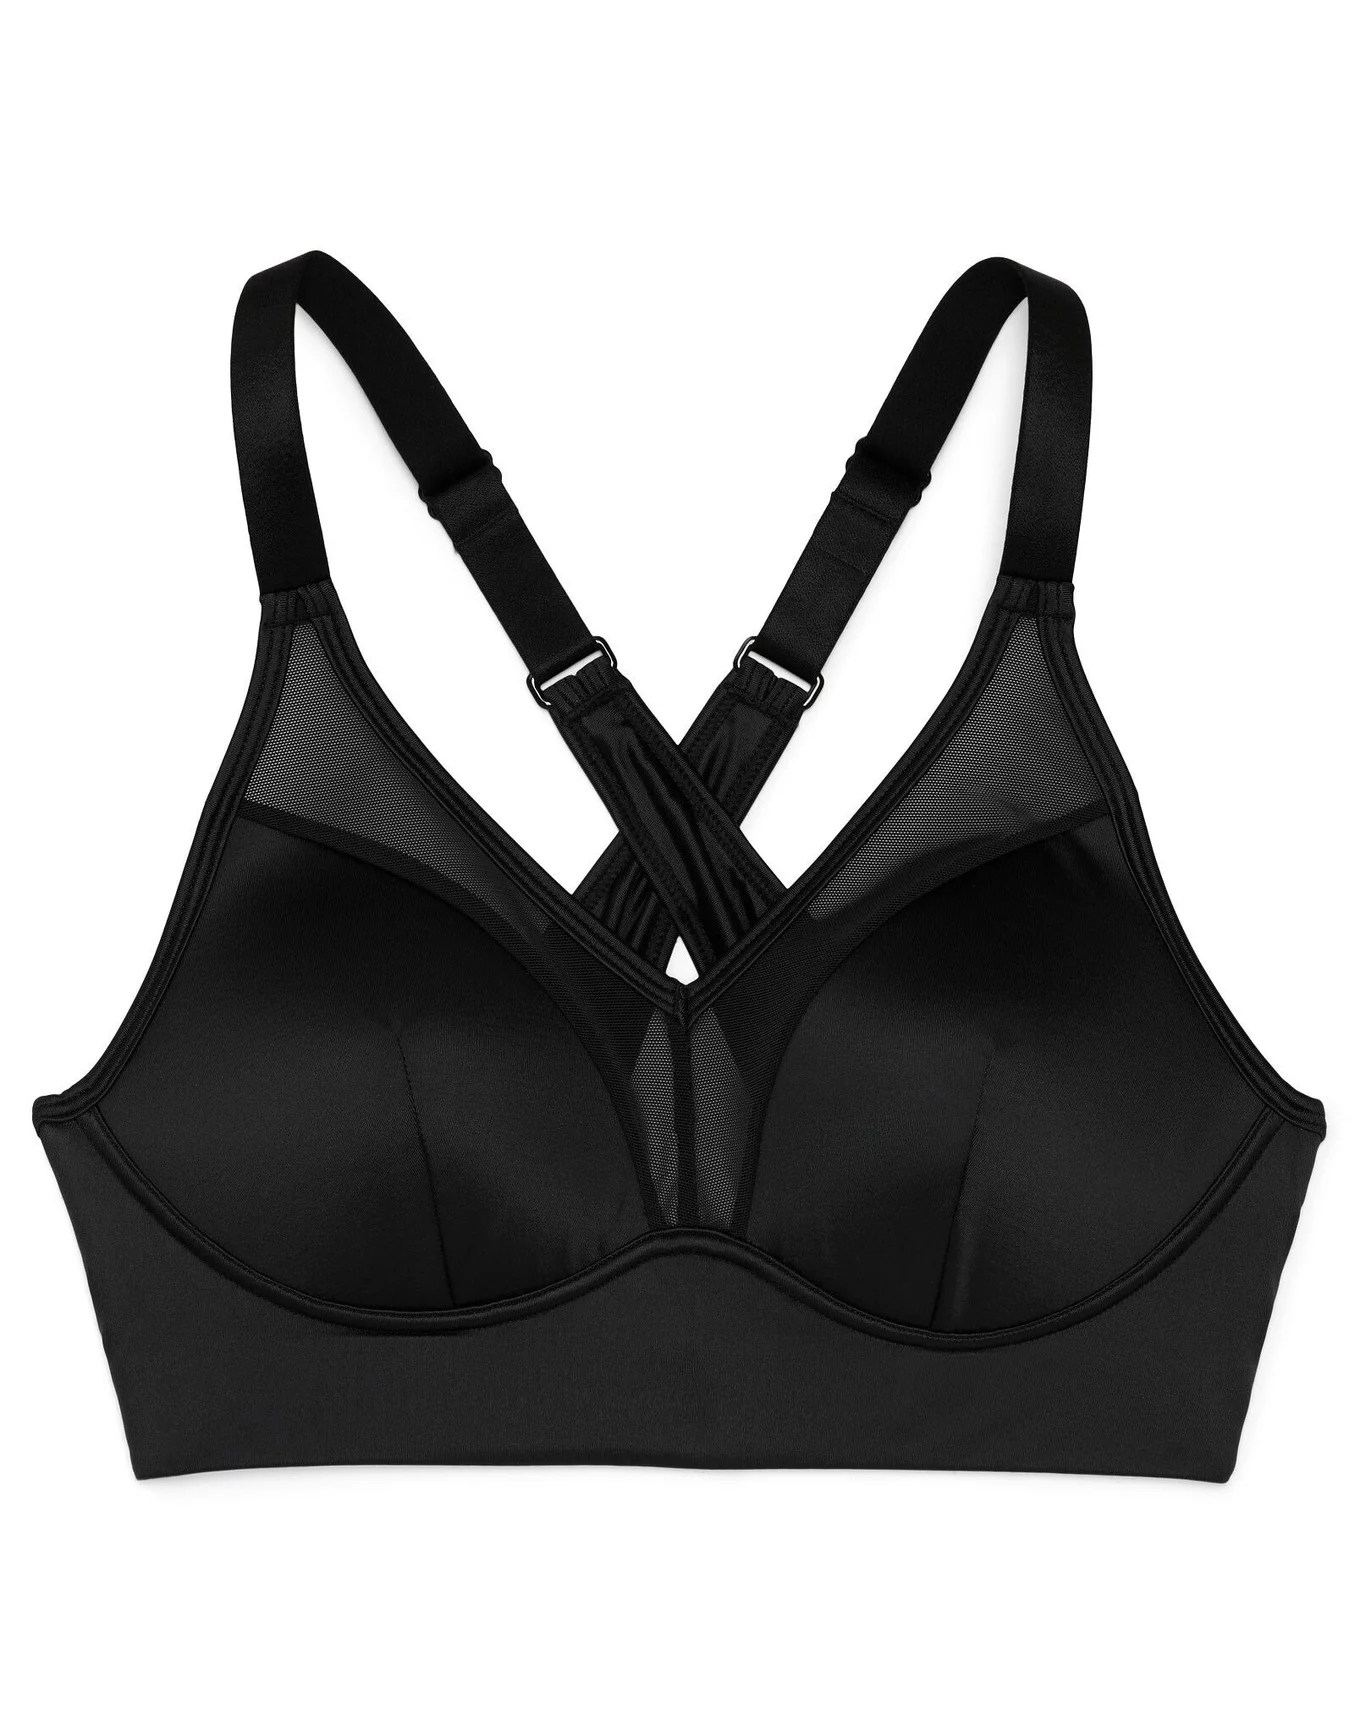 Next womens Moala Sport Bra Bikini Top, Black, 32 32B US at